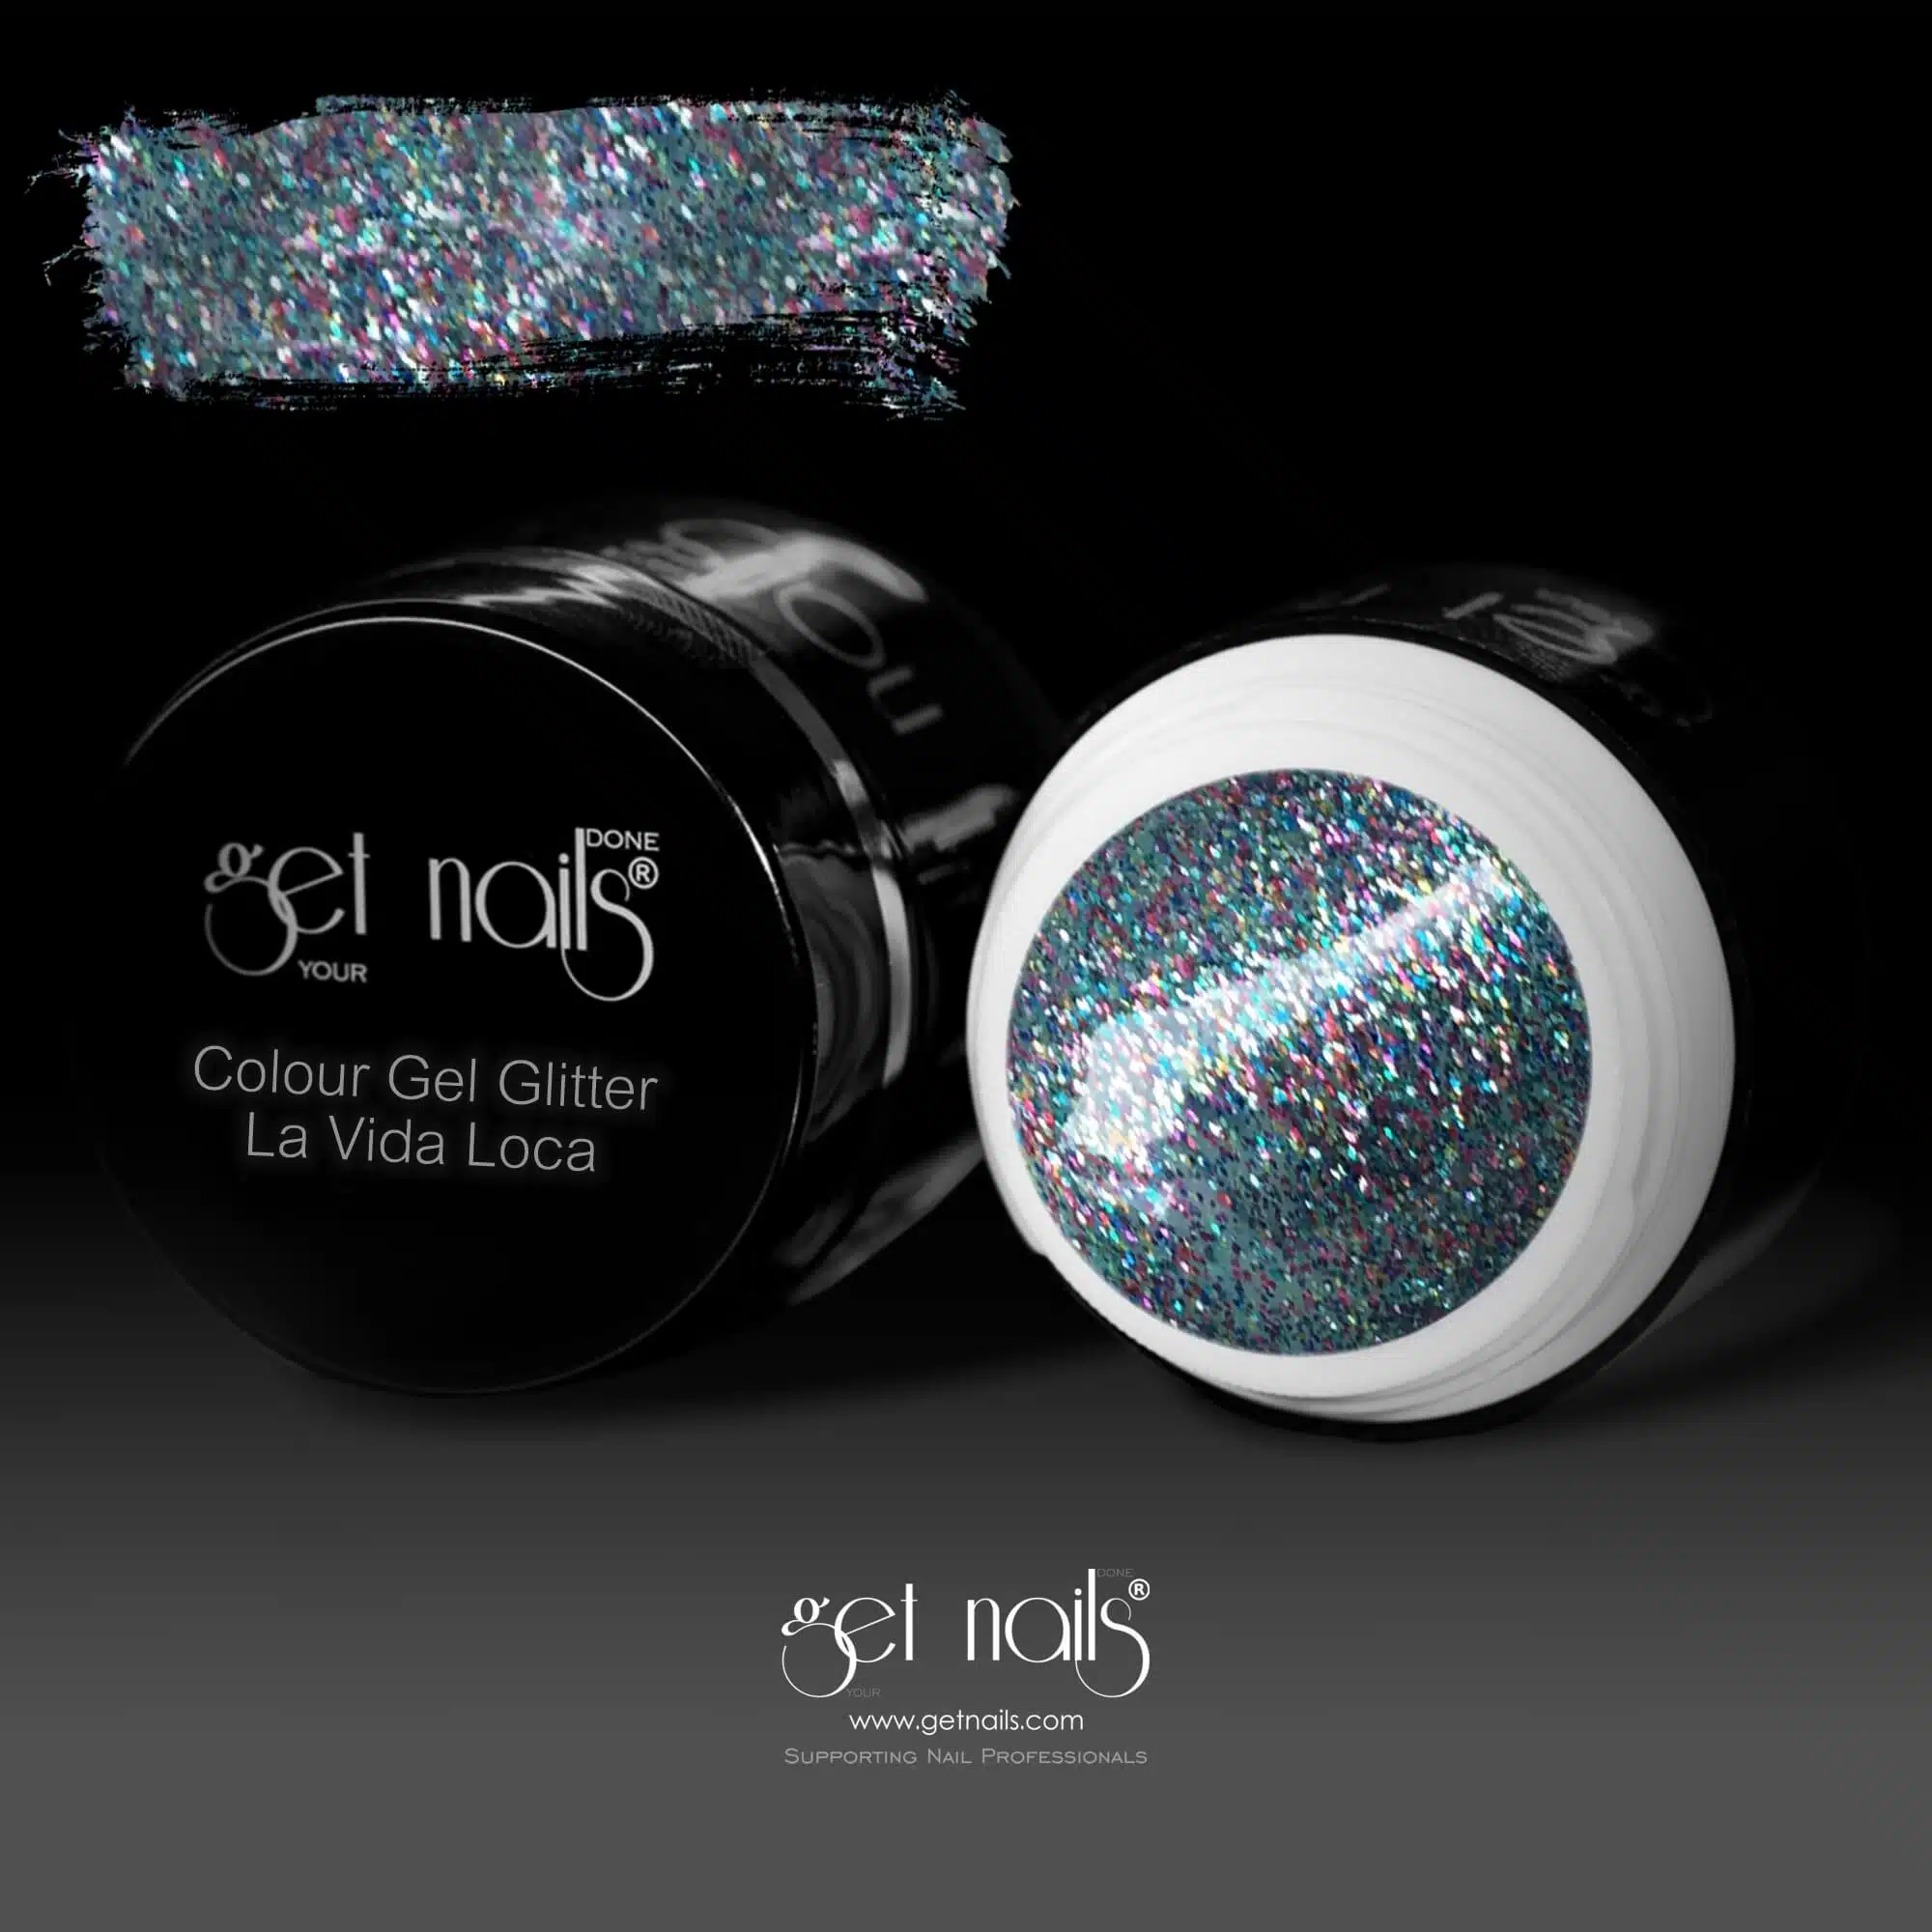 Get Nails Austria - Gel colorato Glitter La Vida Loca 5g